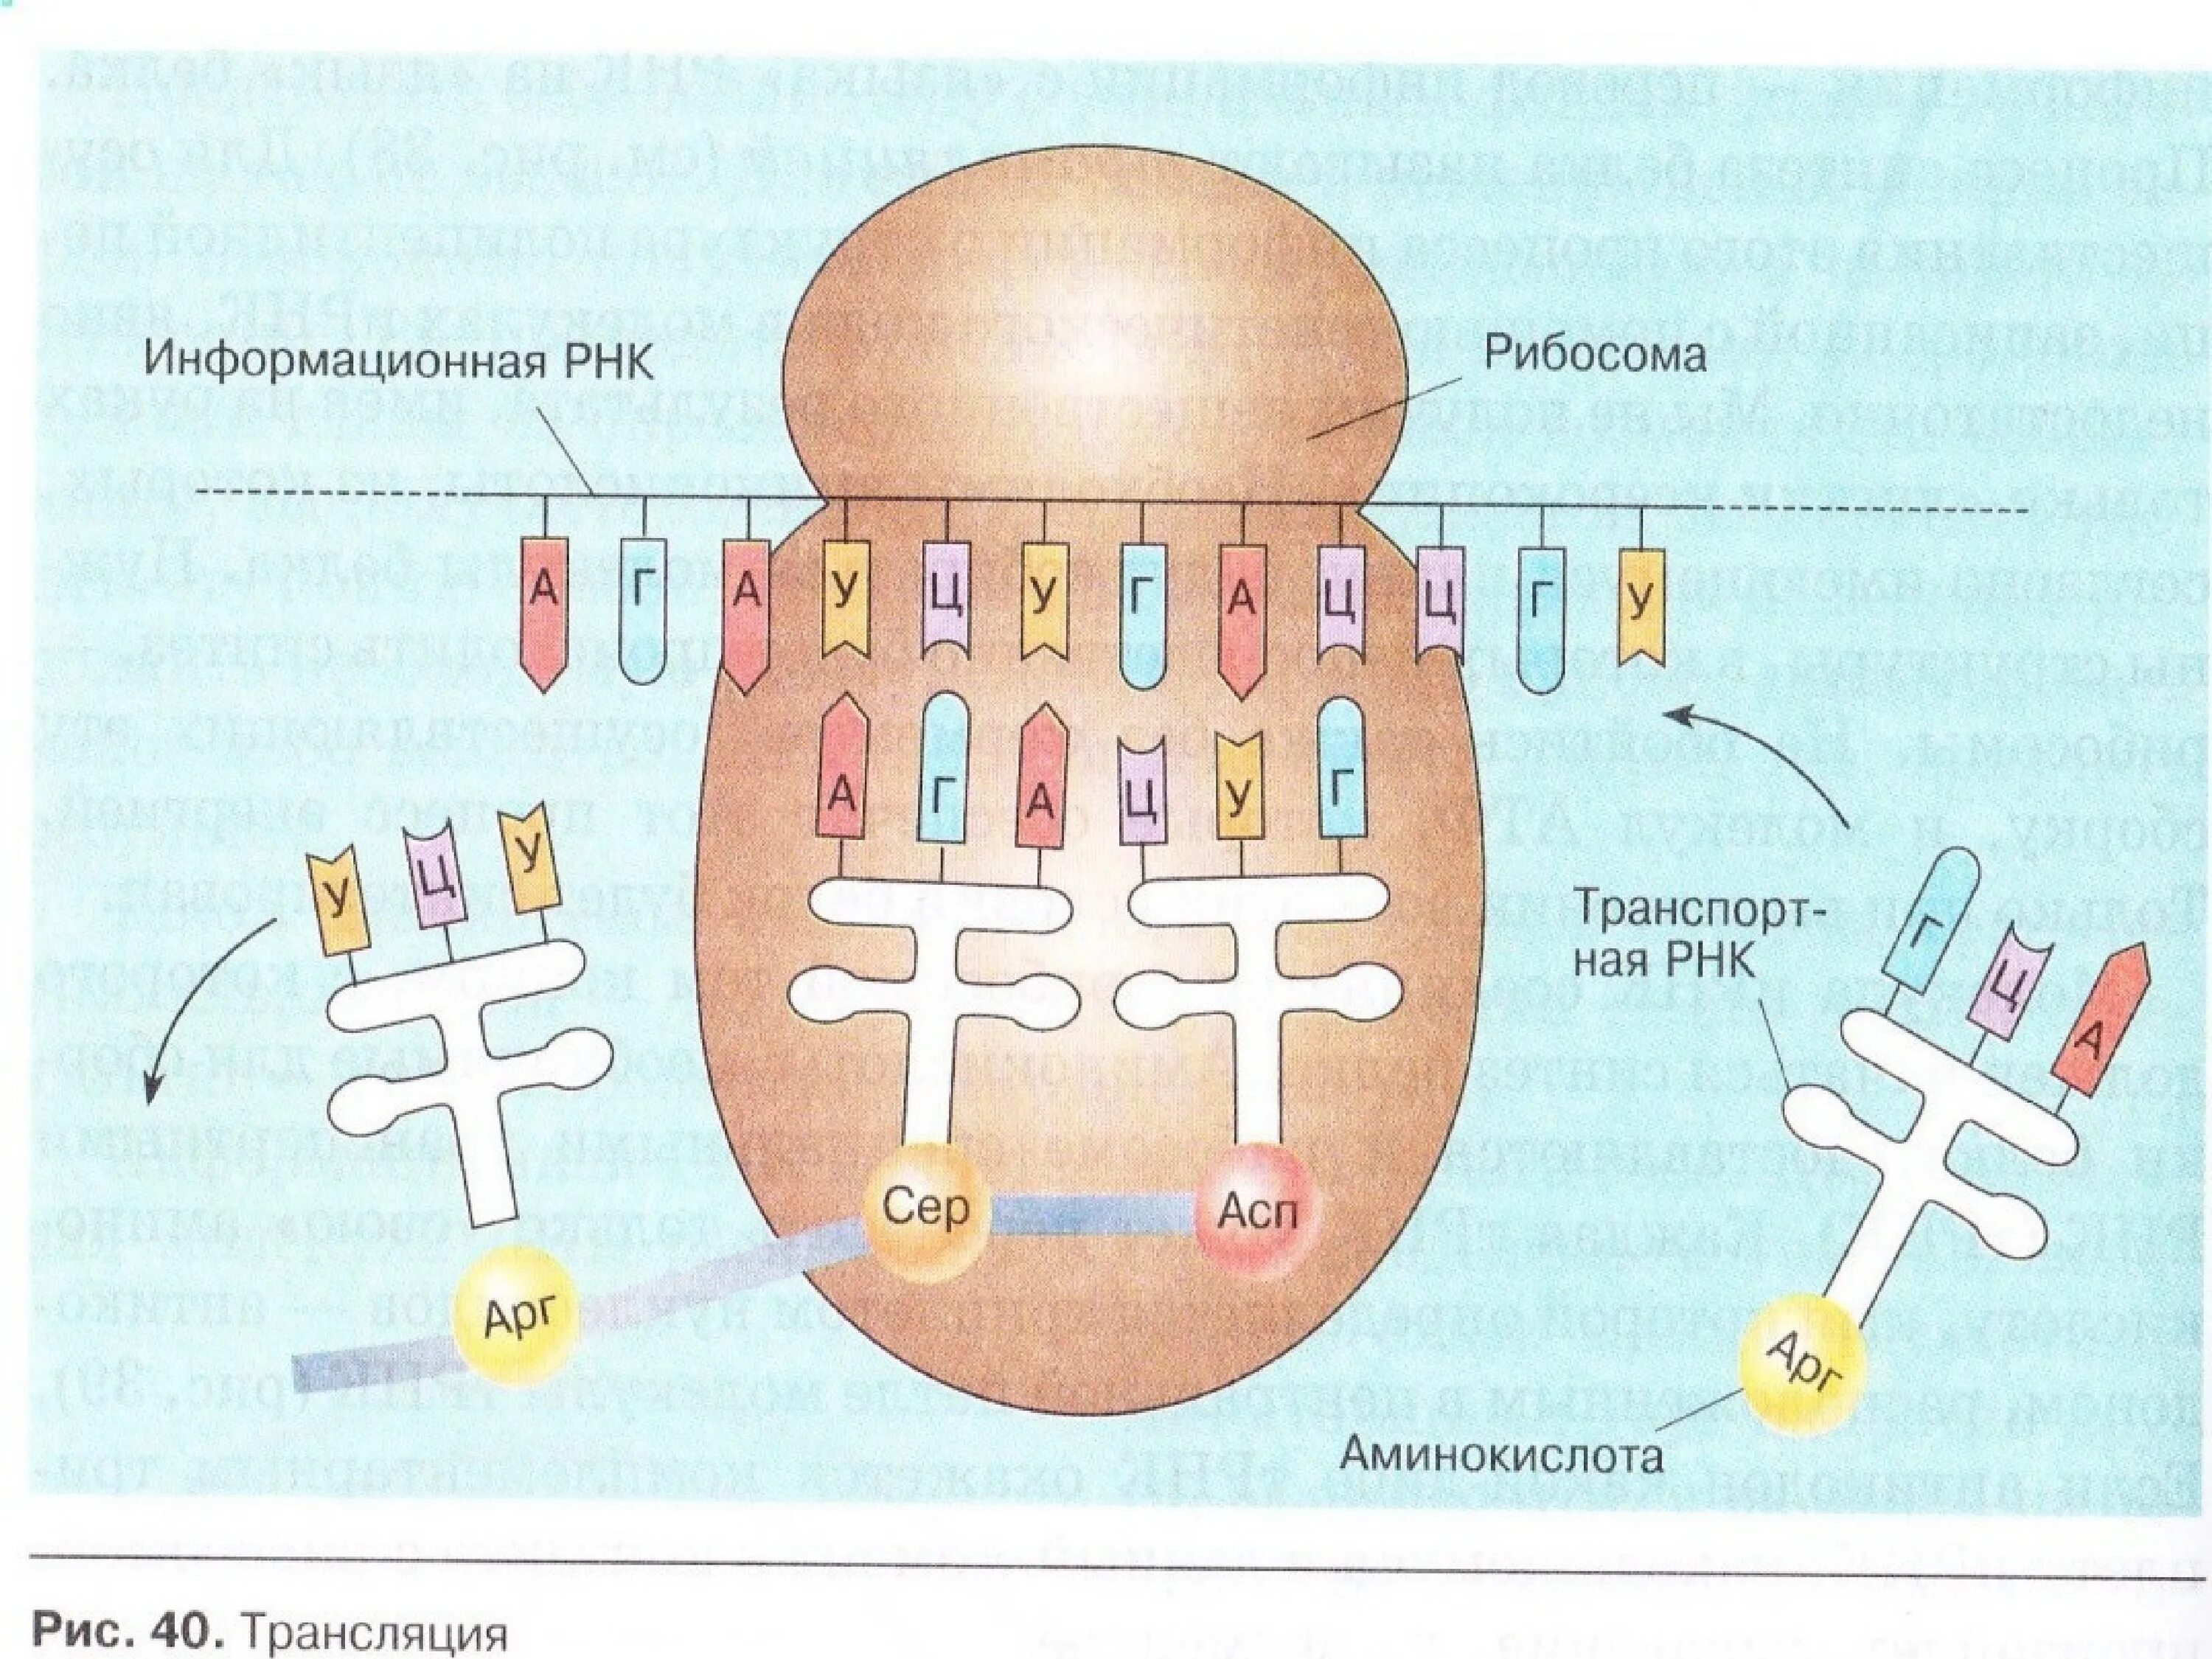 Т рнк синтезируется. Процесс синтеза белка на рибосоме схема. Схема синтеза белка в рибосоме. Схема синтеза белка в рибосоме трансляция. Процесс трансляции на рибосоме схема.